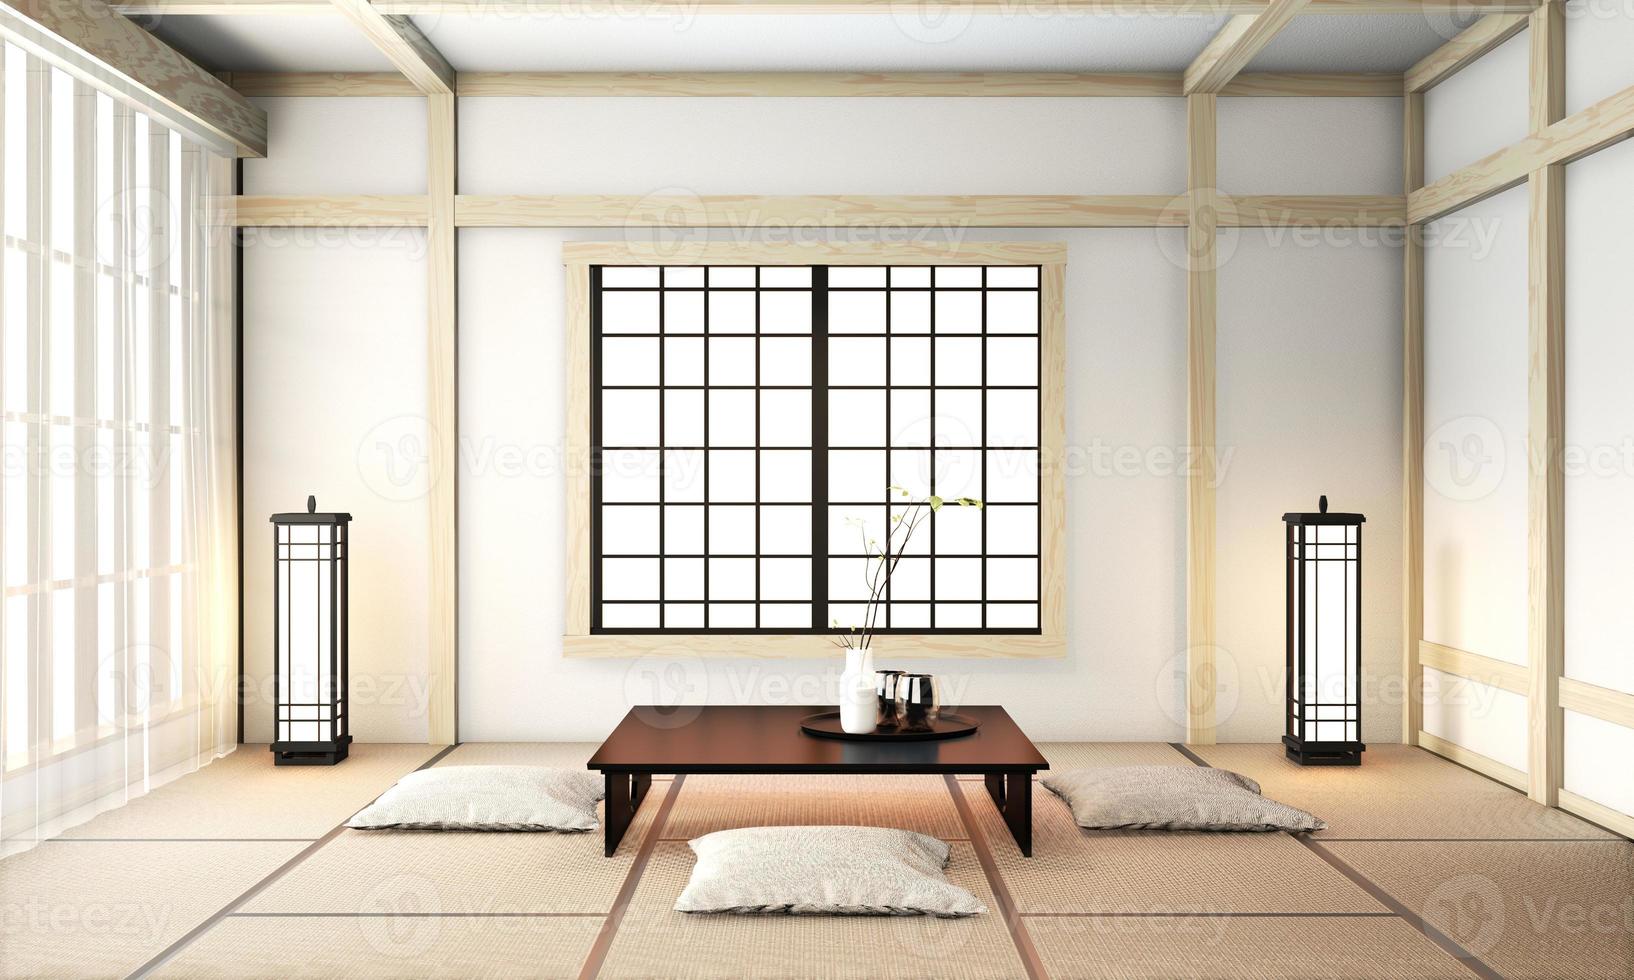 ryokan vardagsrum i japansk stil med tatamimatta golv och dekoration.3D-rendering foto